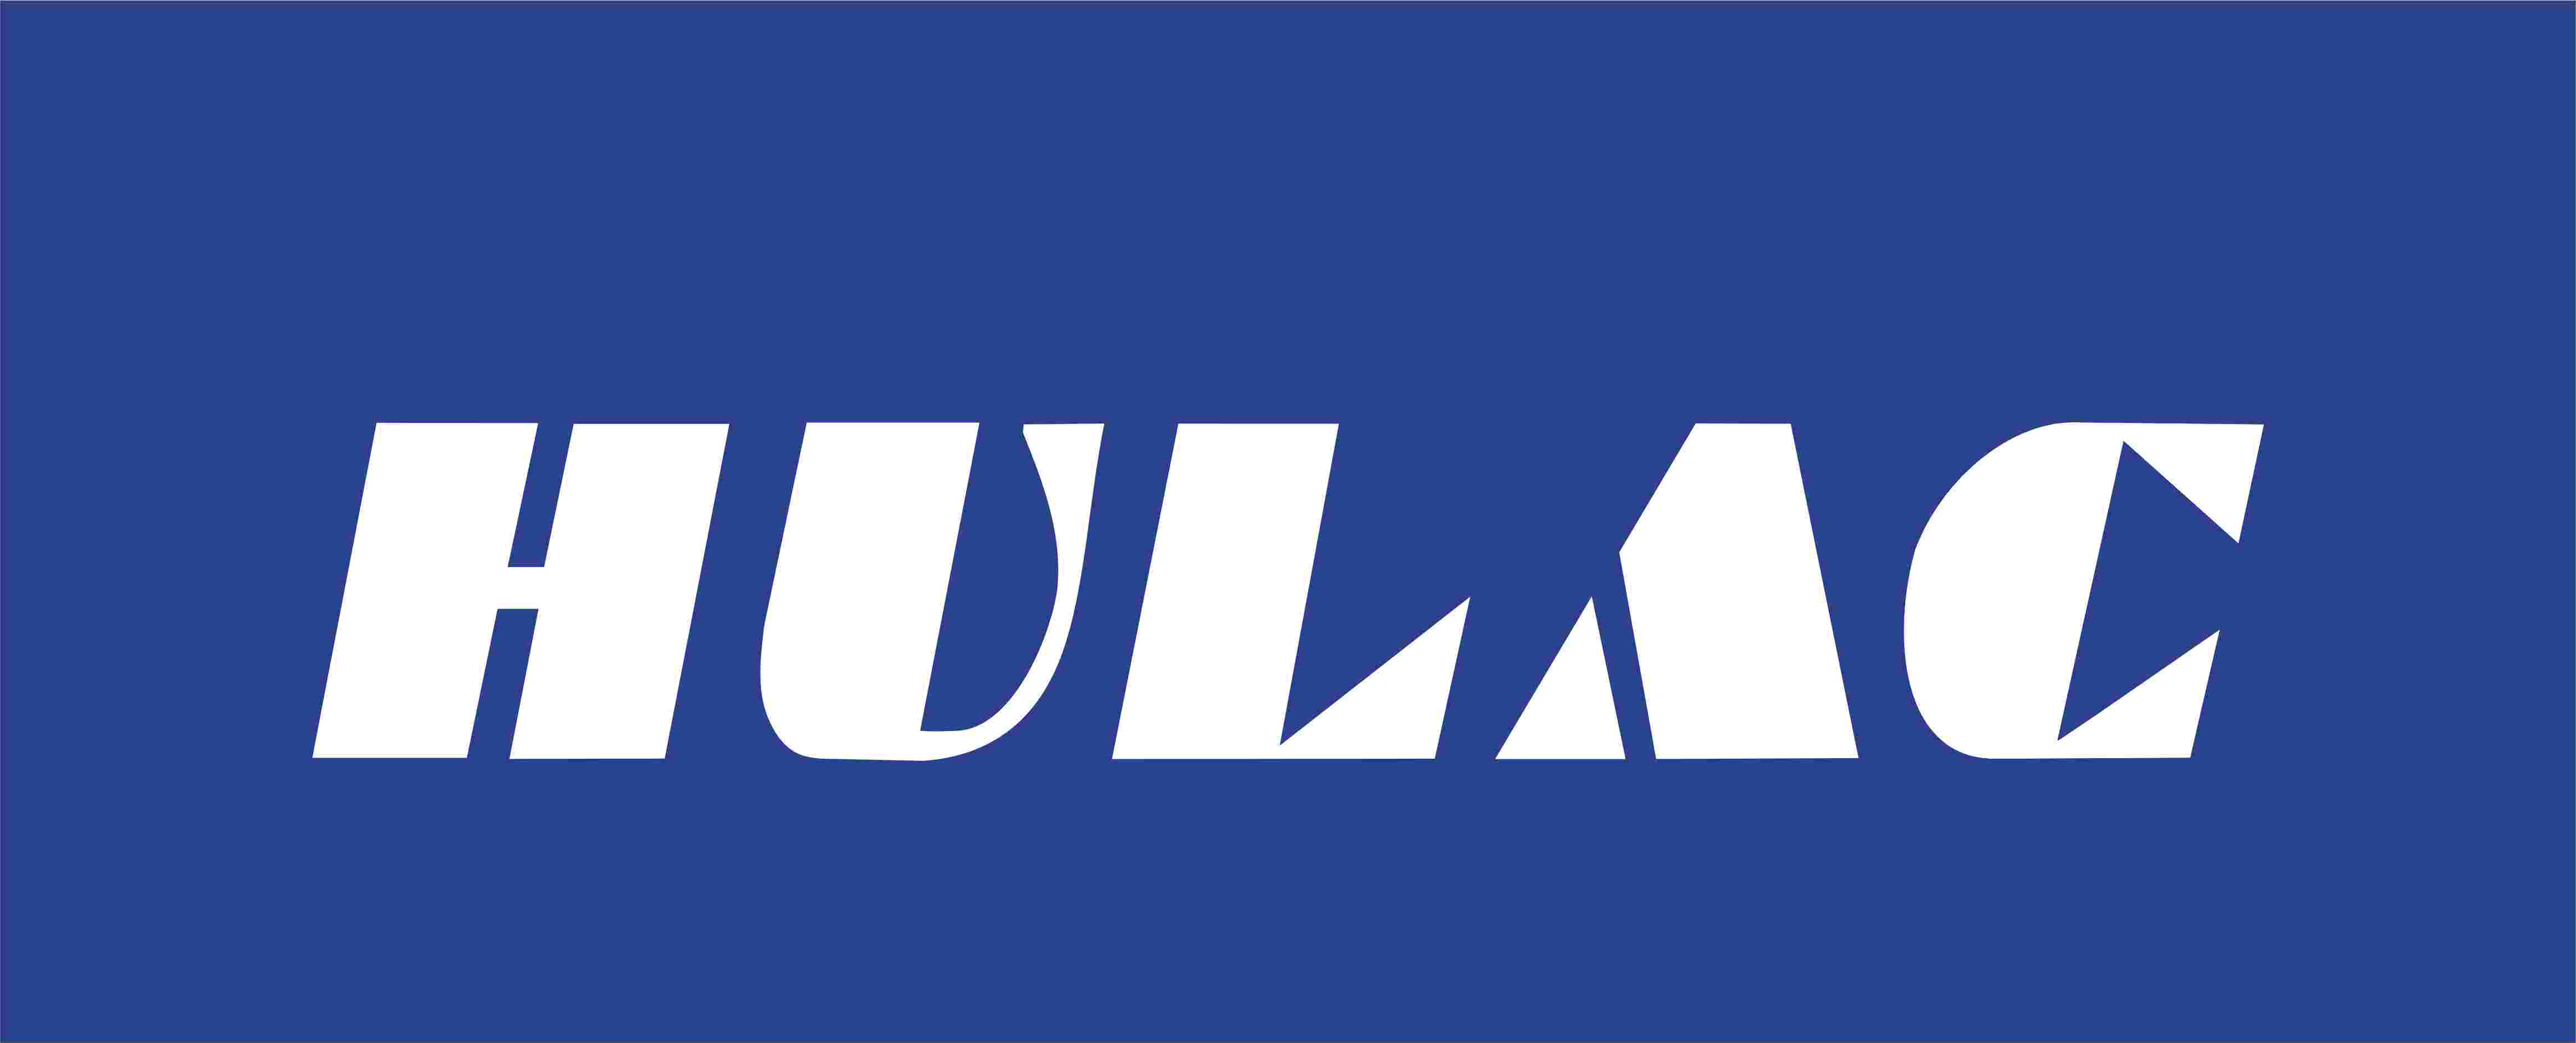 HULAC Oberflächen- und Trocknungsanlagen GmbH